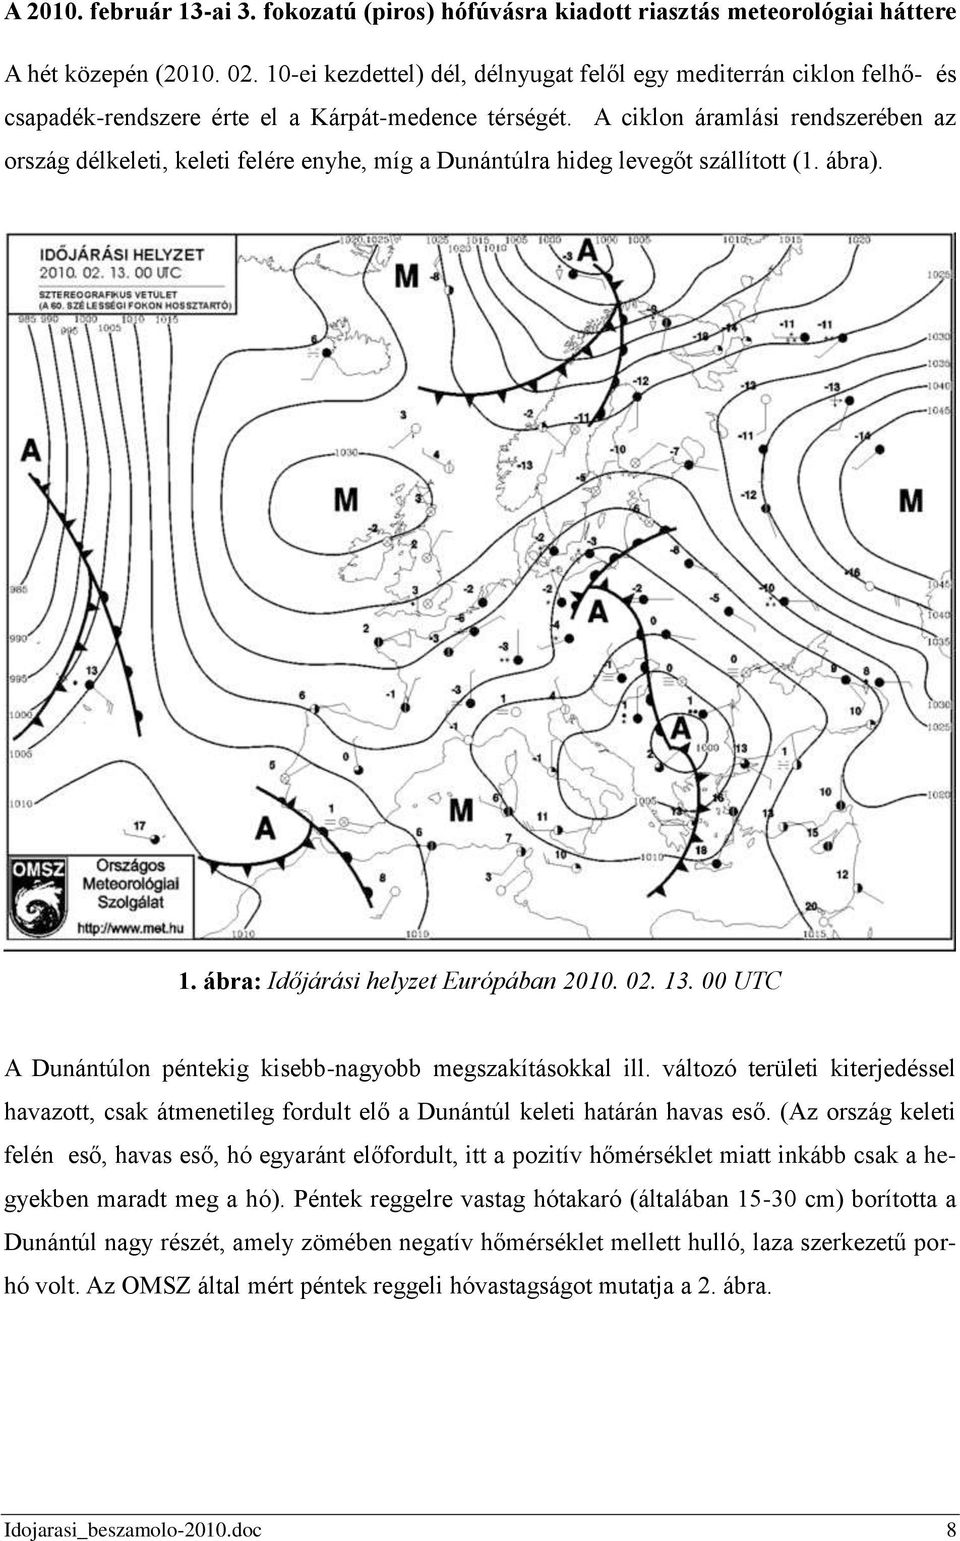 A ciklon áramlási rendszerében az ország délkeleti, keleti felére enyhe, míg a Dunántúlra hideg levegőt szállított (1. ábra). 1. ábra: Időjárási helyzet Európában 2010. 02. 13.